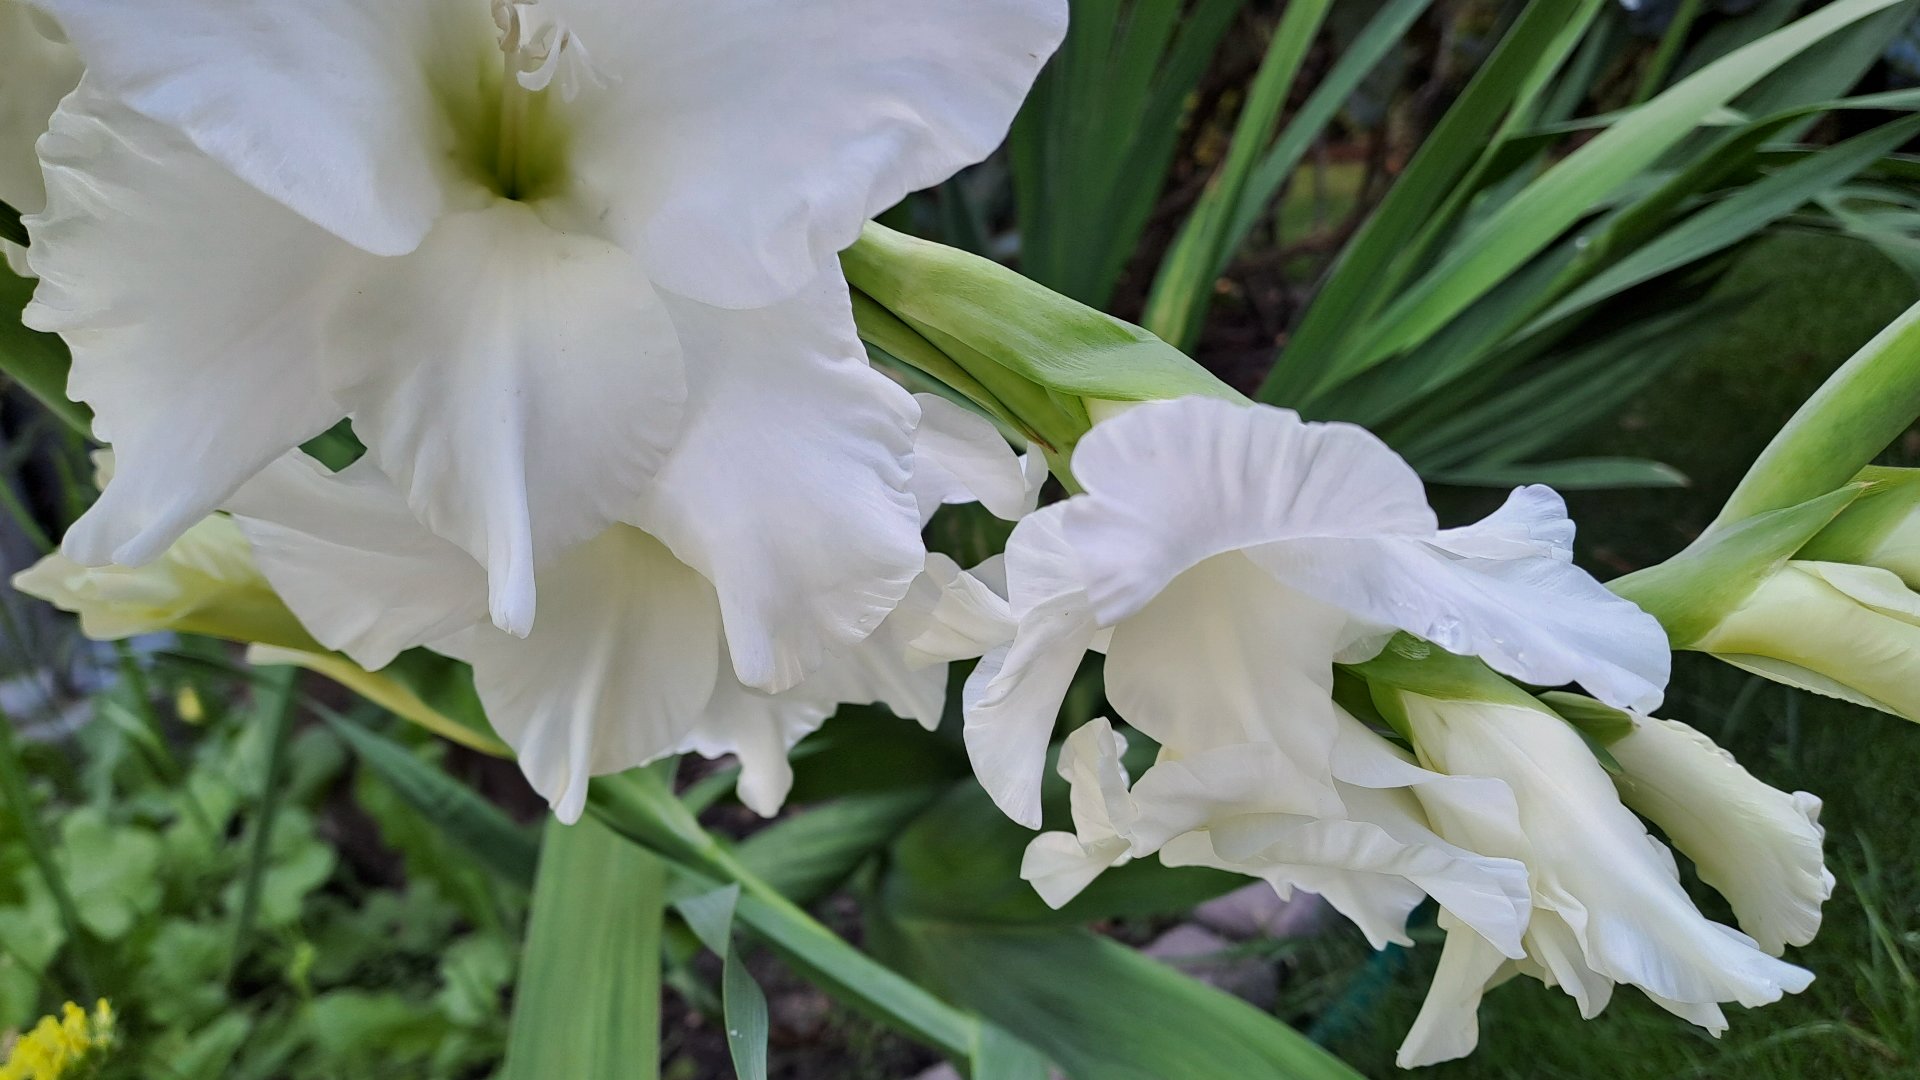 gladiole -białe mieczyki na tle zieleni